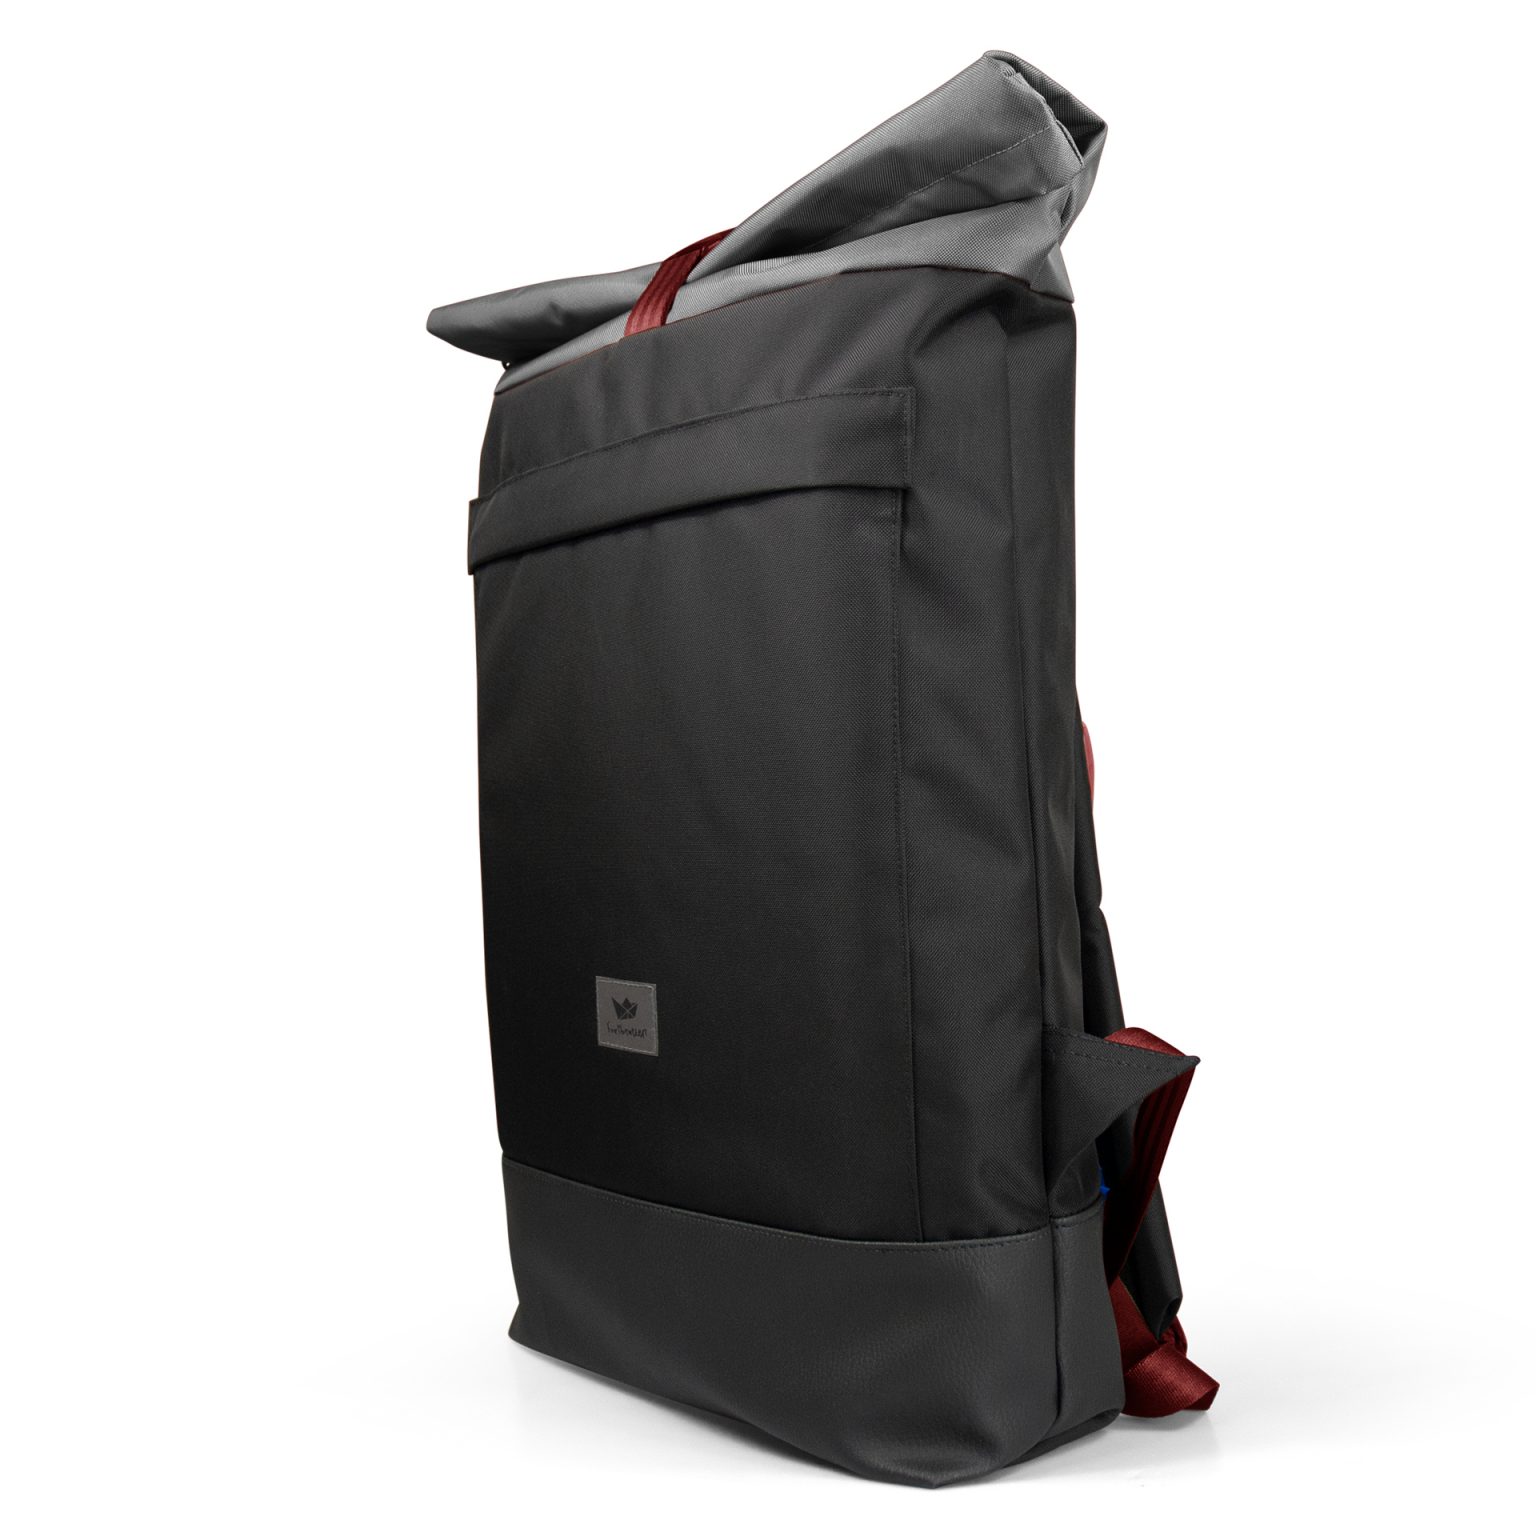 schwarzer Courierbag Rucksack mit rotem Kontrastband von Freibeutler - vegan und aus recyceltem PET hergestellt